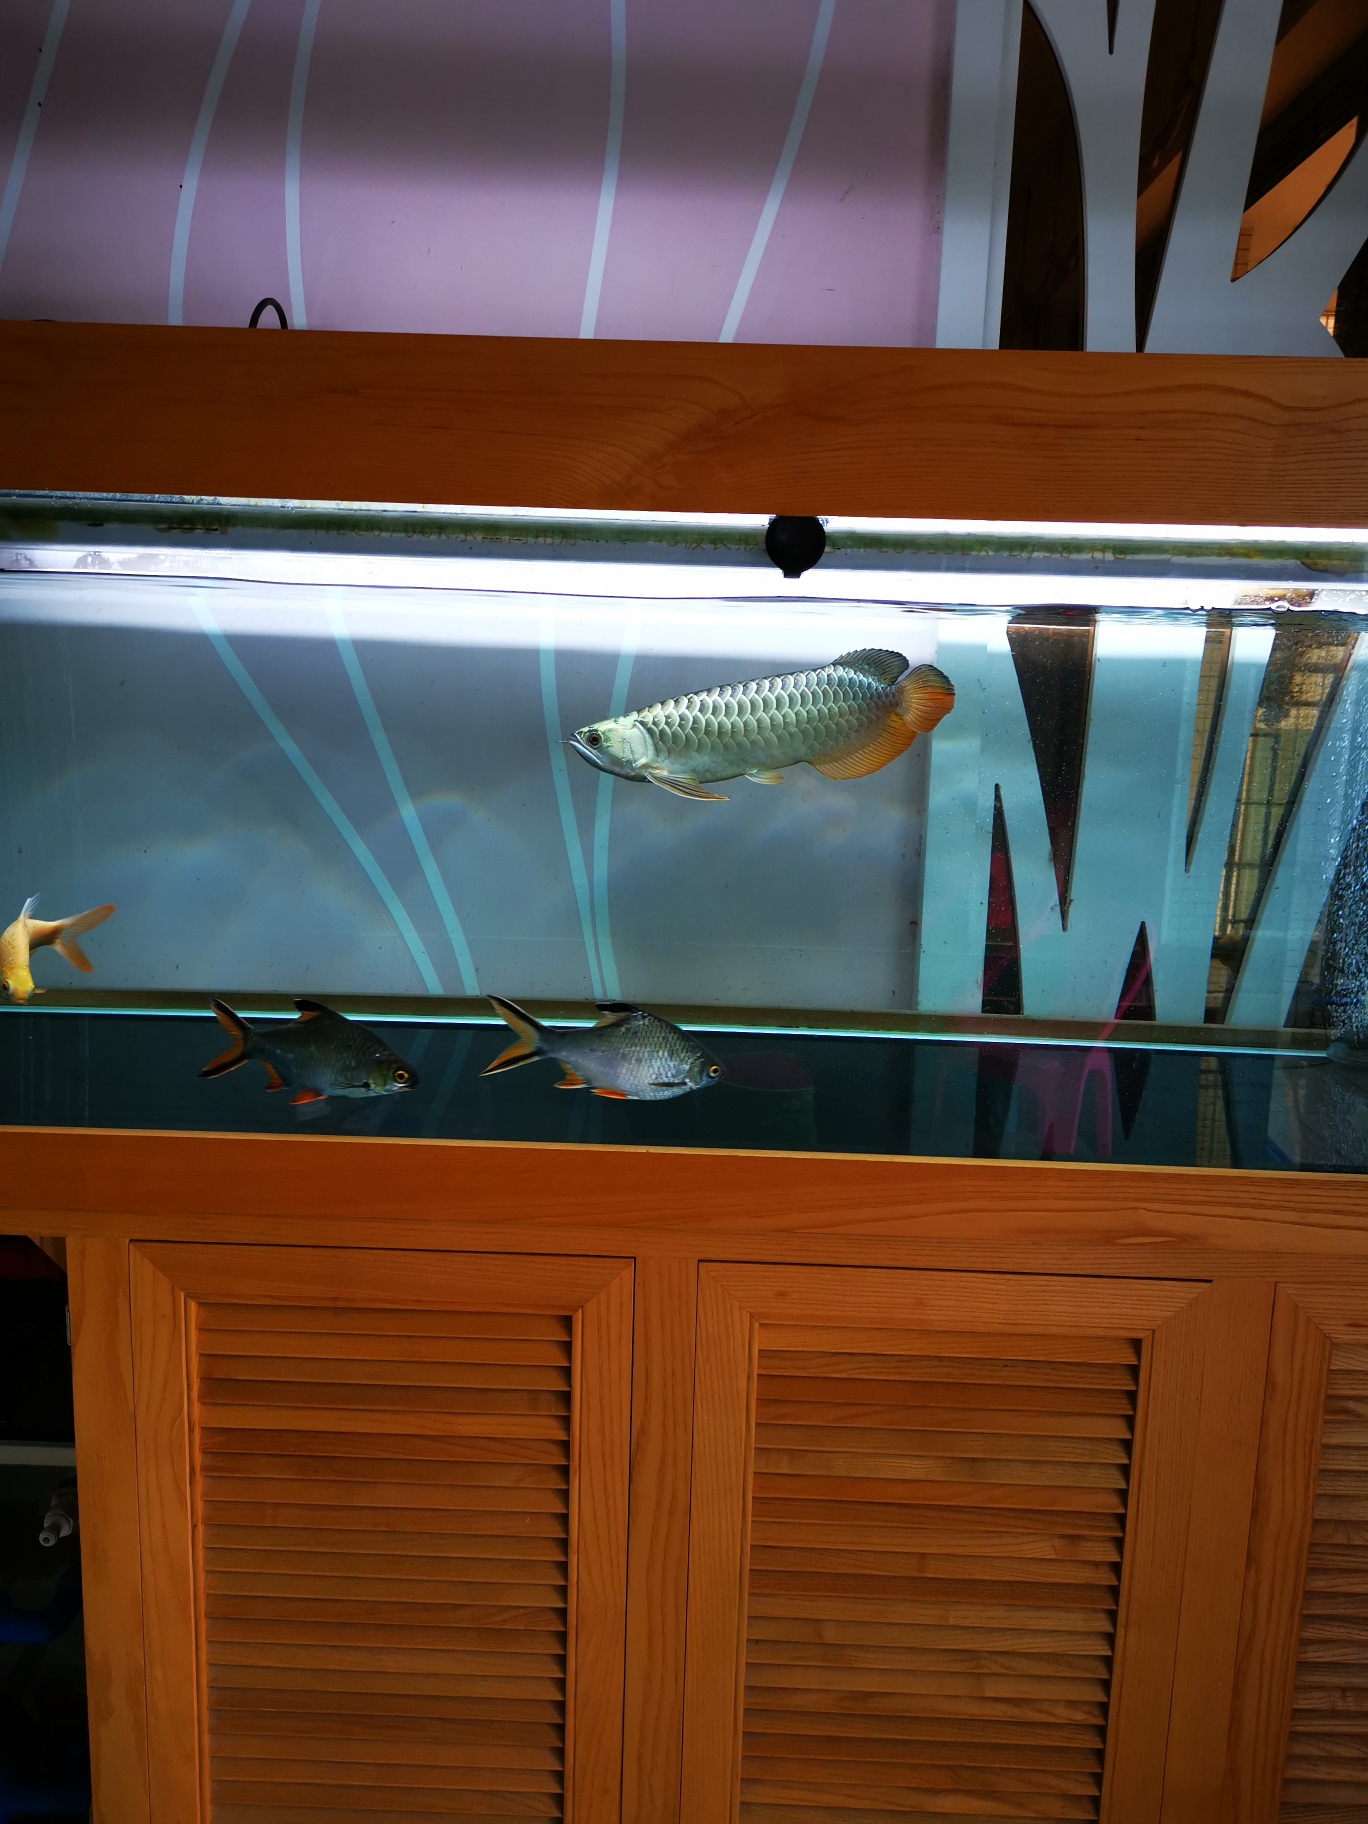 我钟爱的一米龙迪纳迷彩过背 虎纹银版鱼 第3张